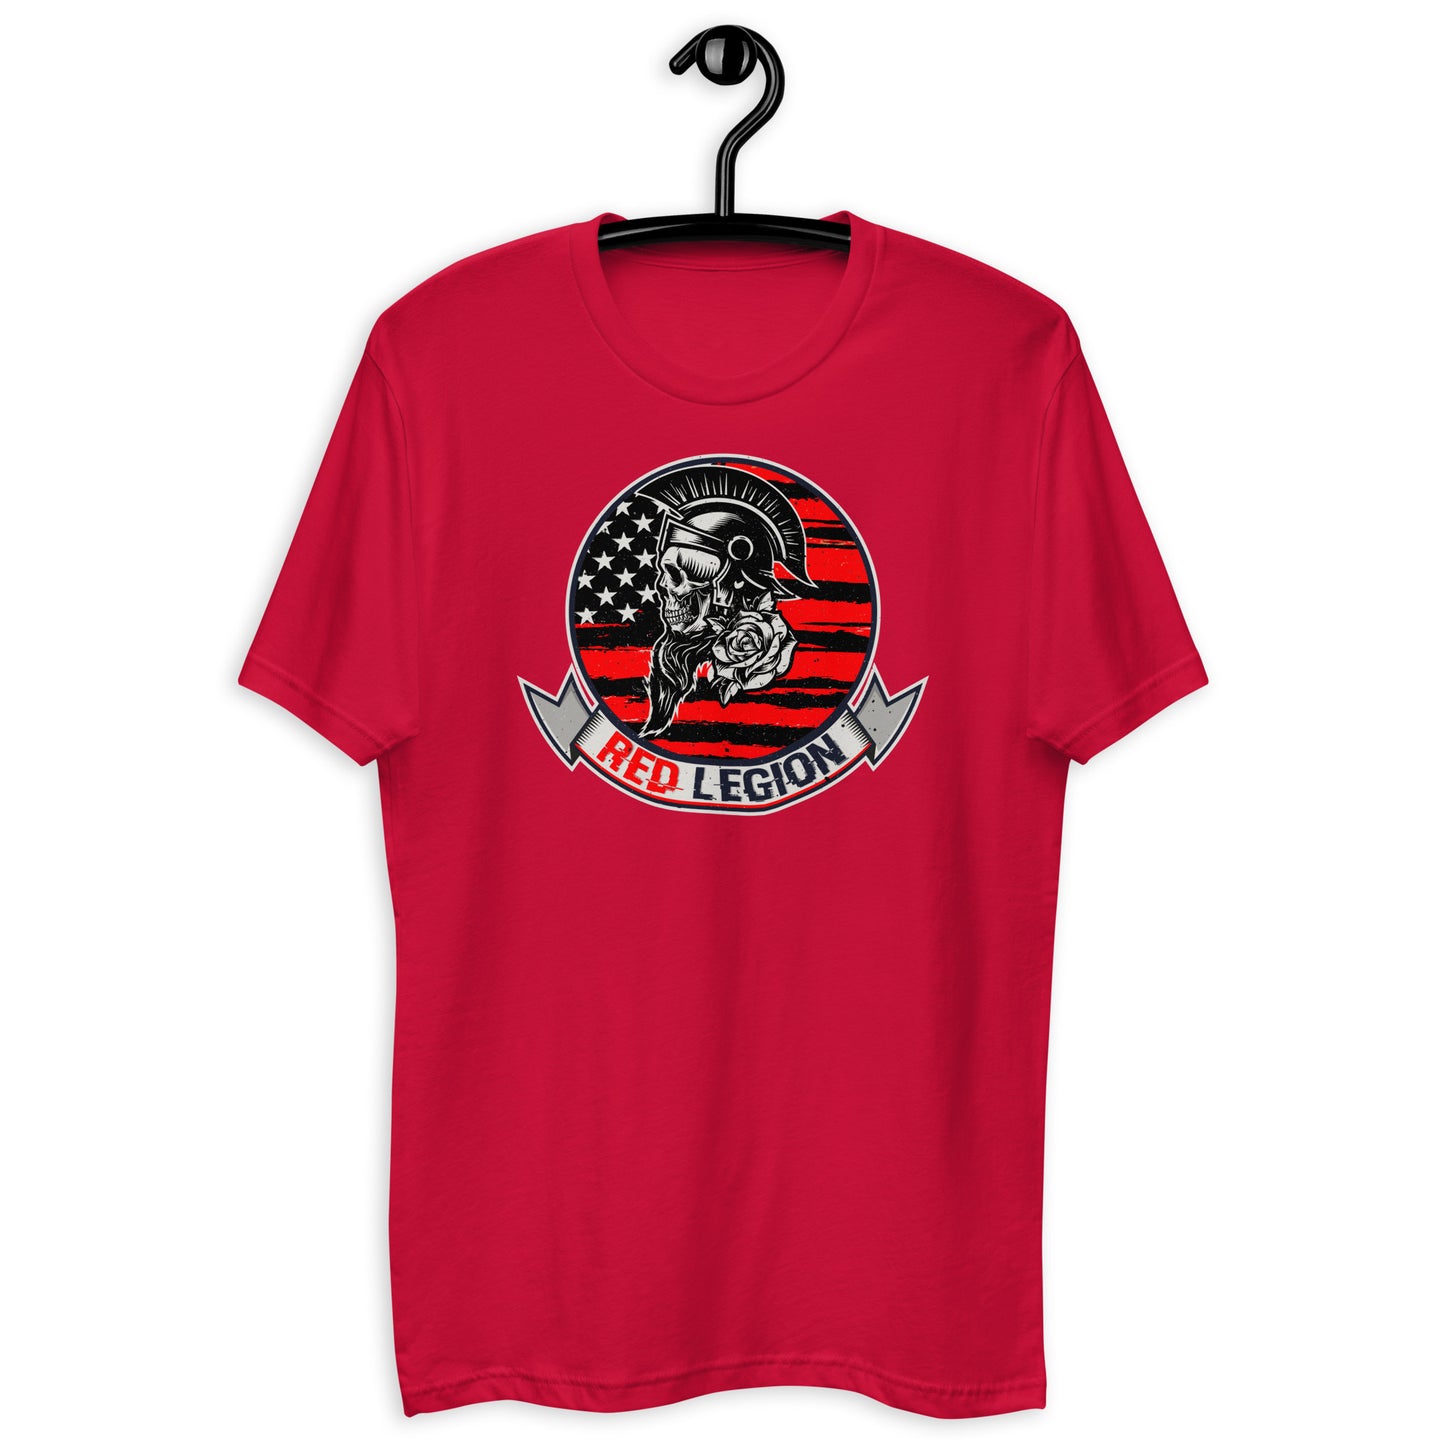 Red Legion - Short Sleeve T-shirt